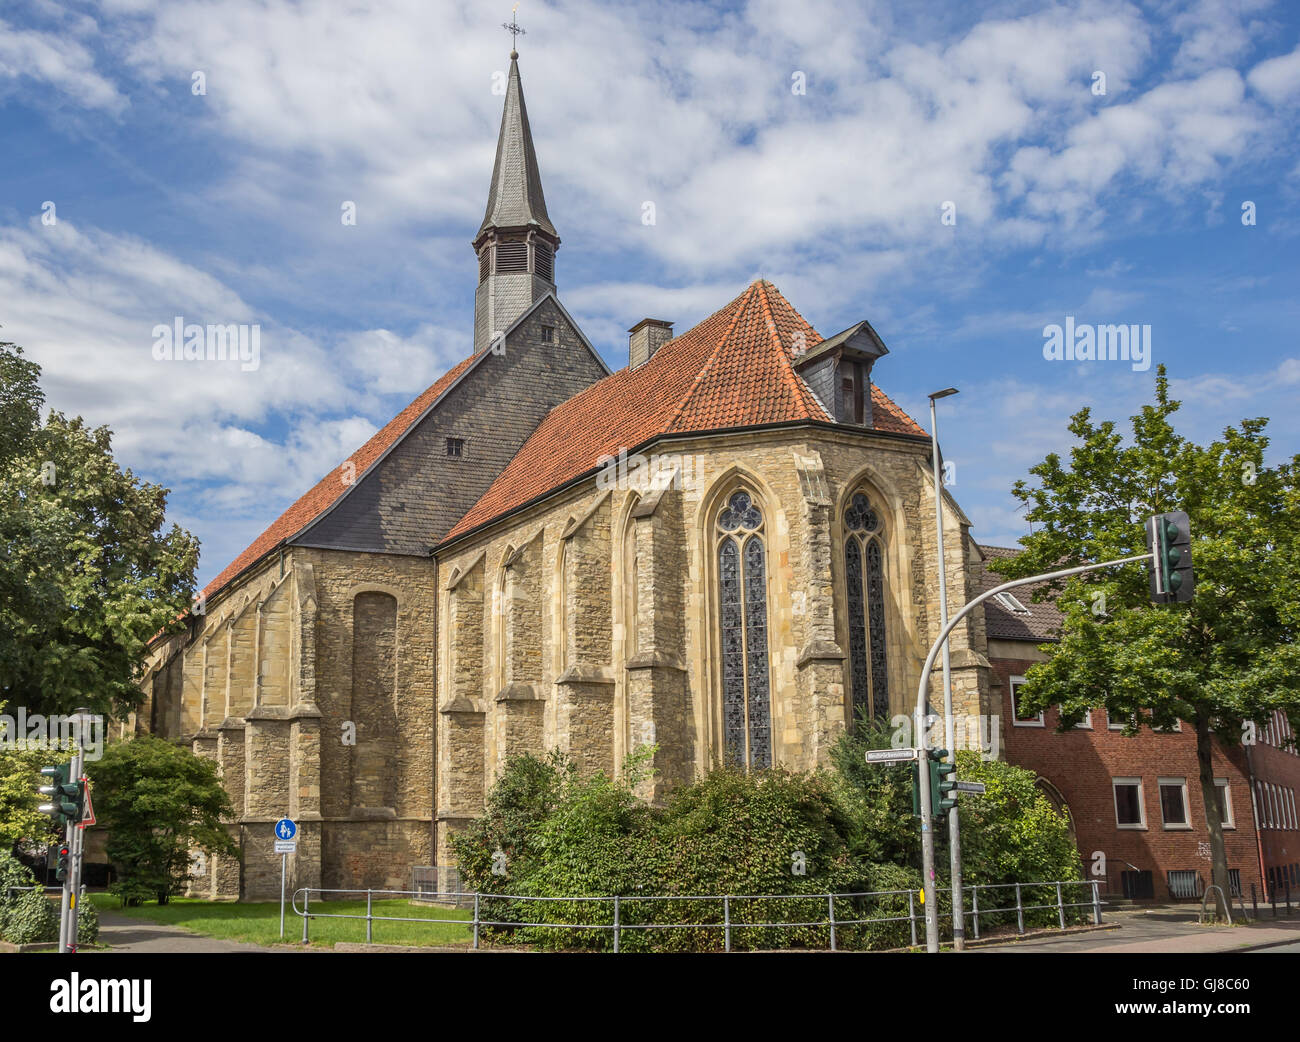 Apostel église dans le centre historique de Munster, Allemagne Banque D'Images